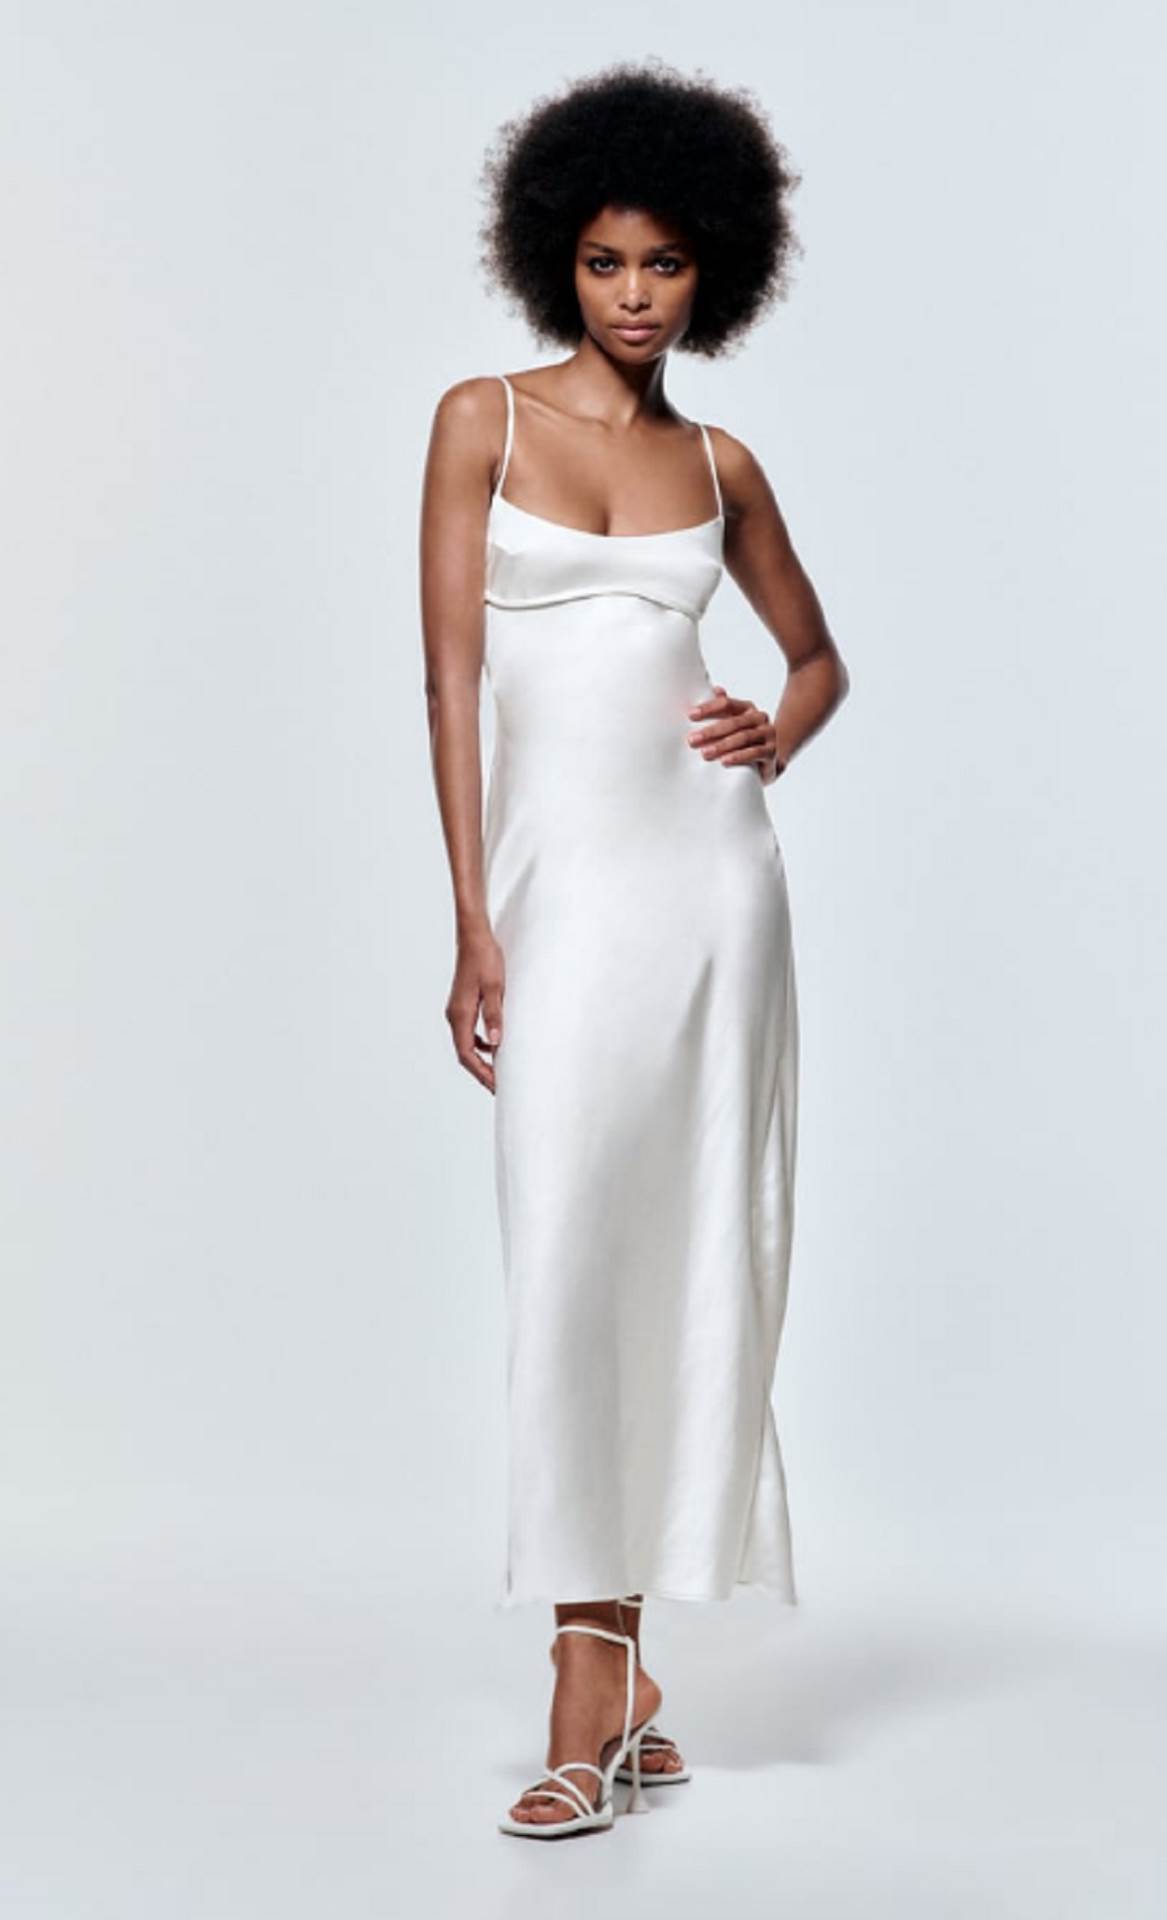  Zara satenska haljina od sada je dostupna i u beloj boji i savršena je kao zamena za venčanicu. 